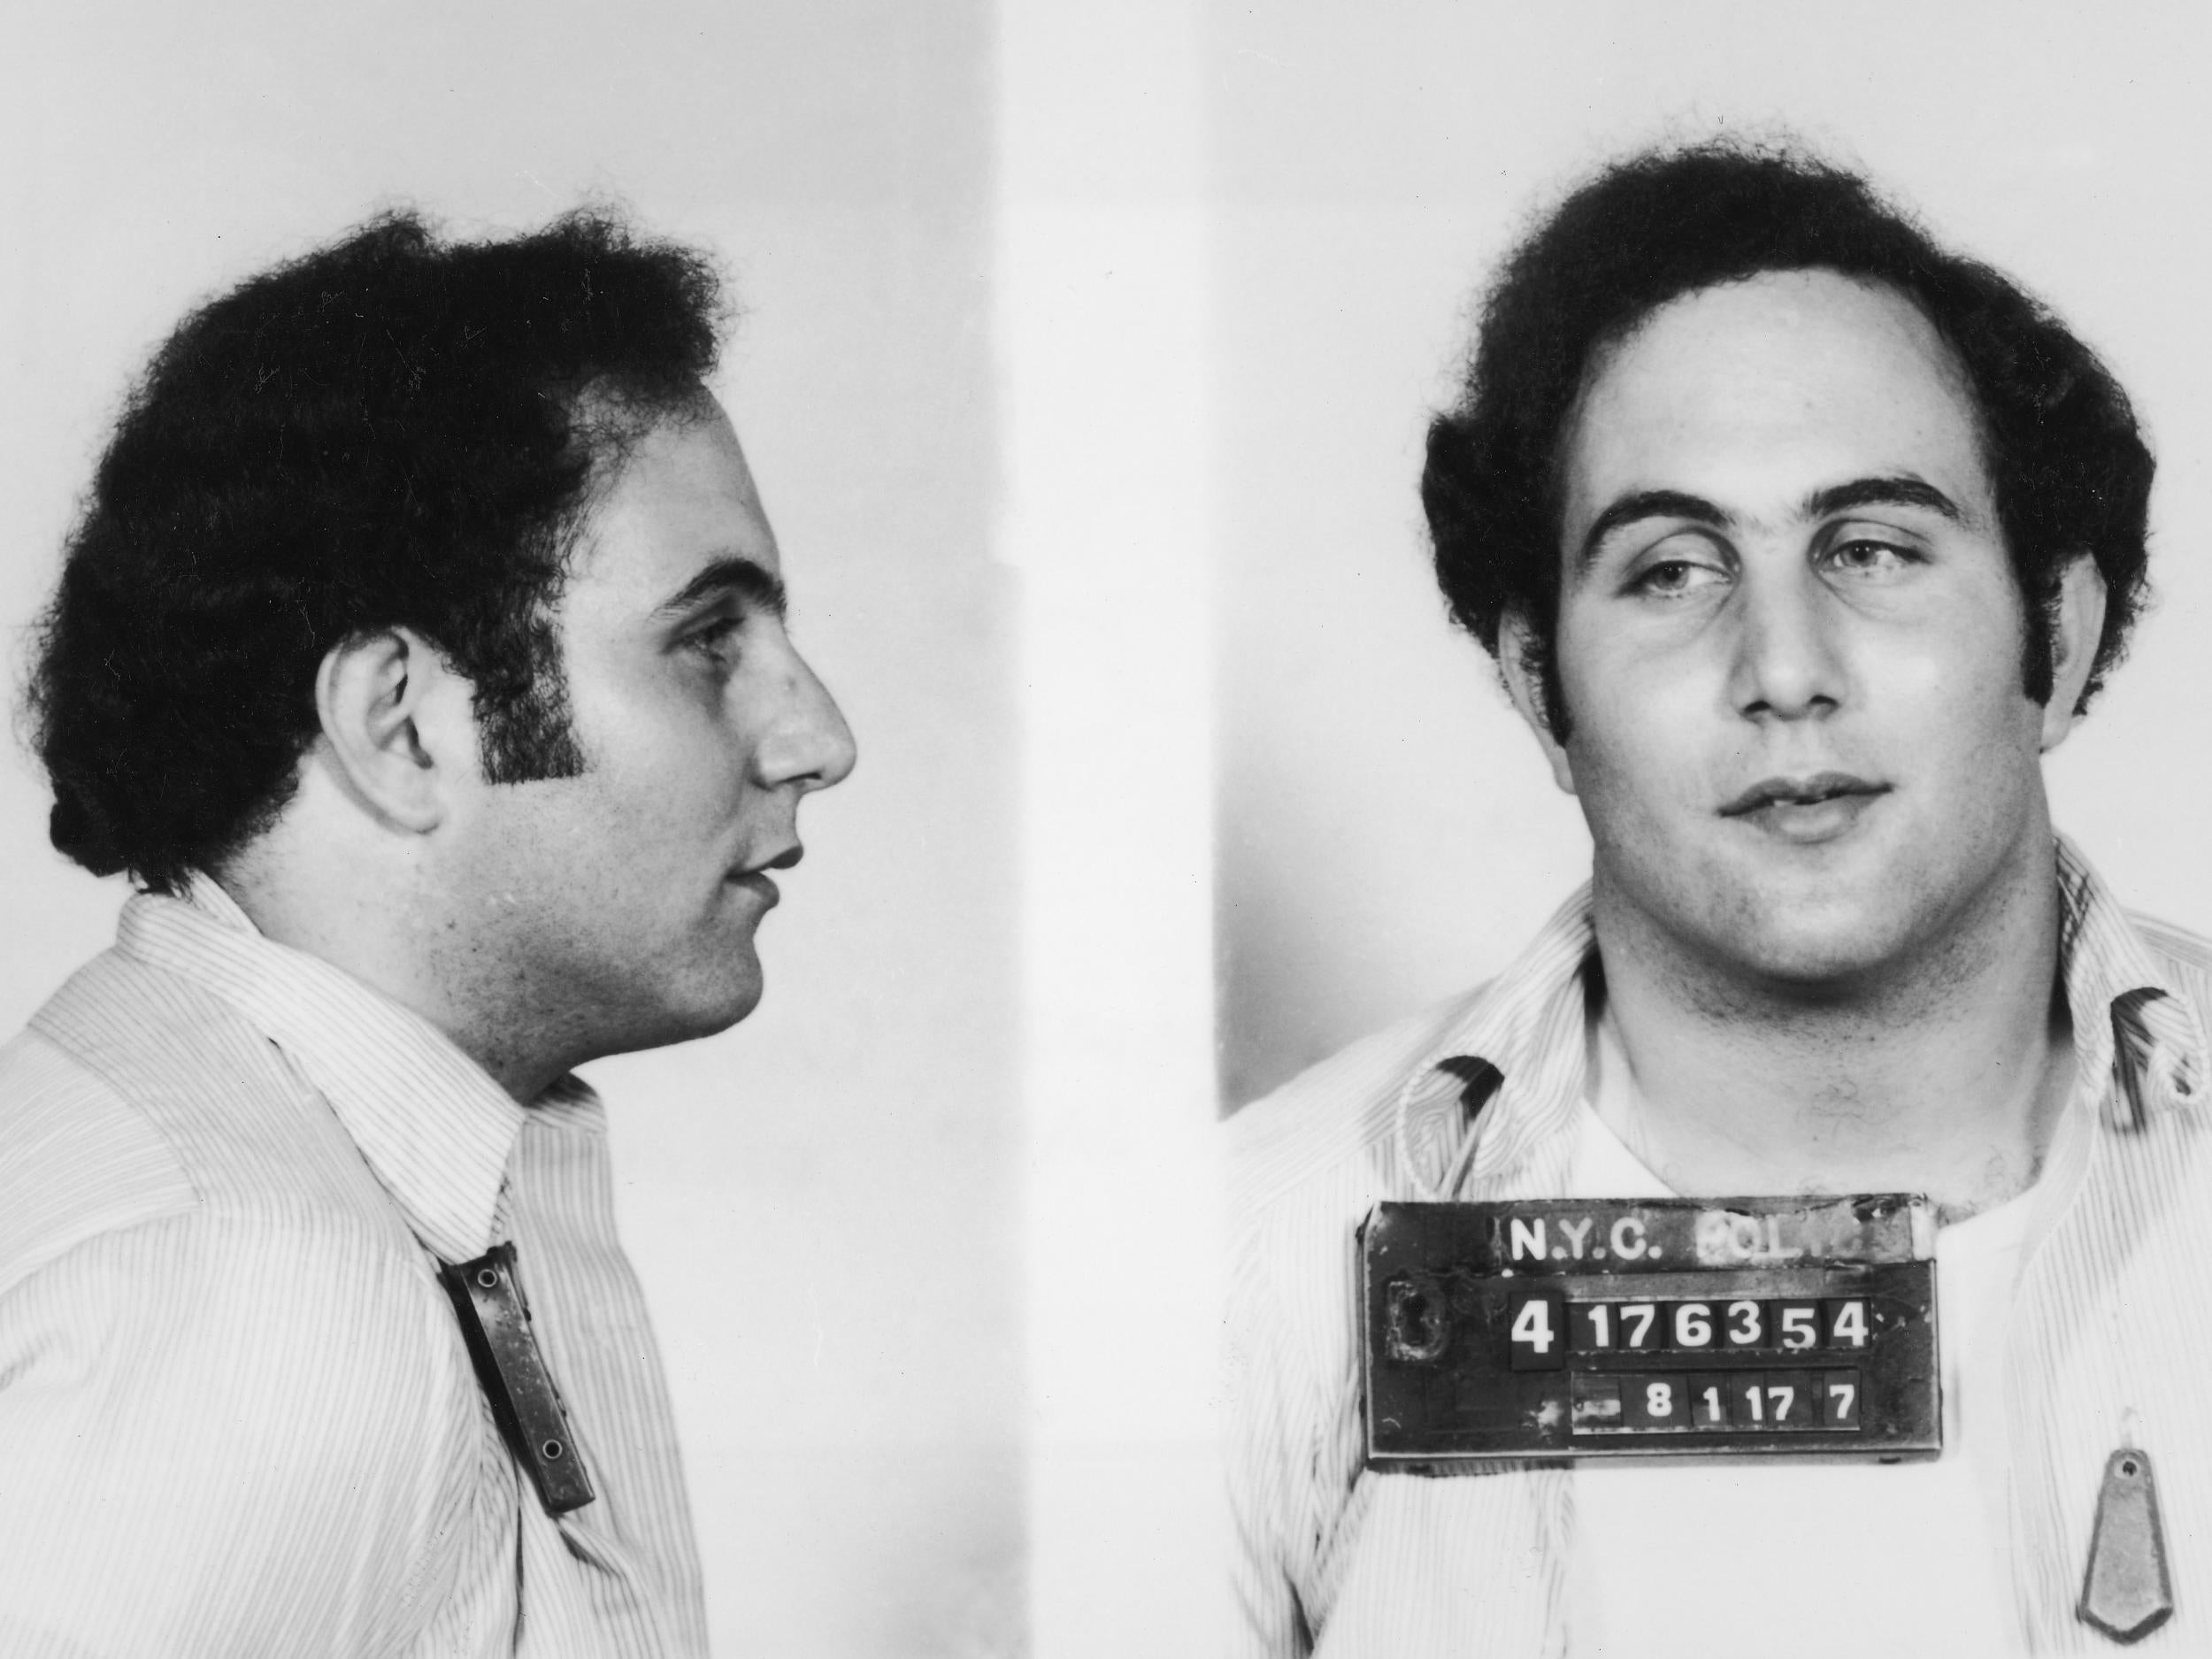 Son of Sam killer David Berkowitz in his police booking photo